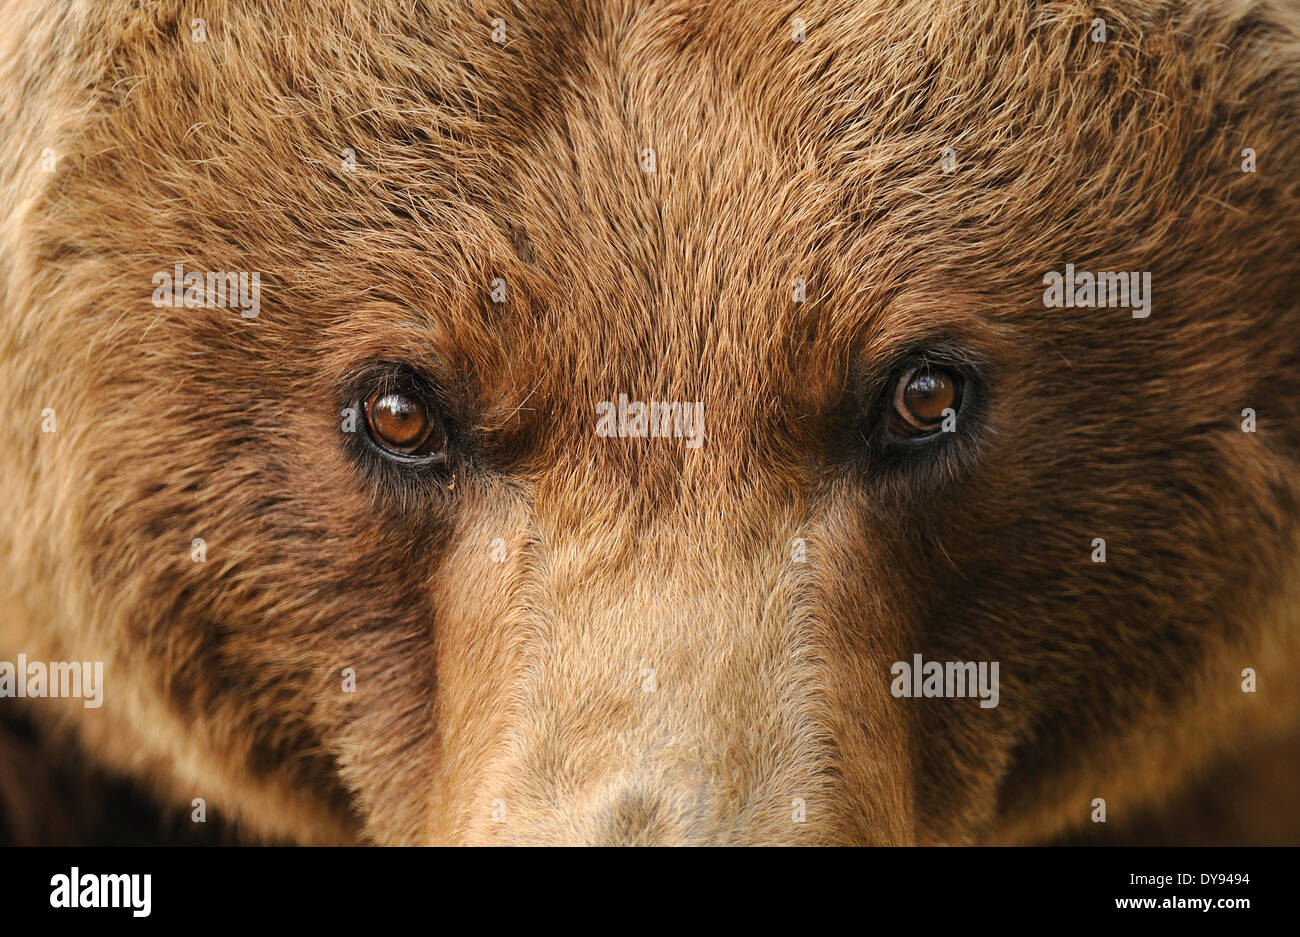 Brown bear, European bear, European brown bear, predator, Ursus arctos, bear, animal, animals, Germany, Europe, Stock Photo